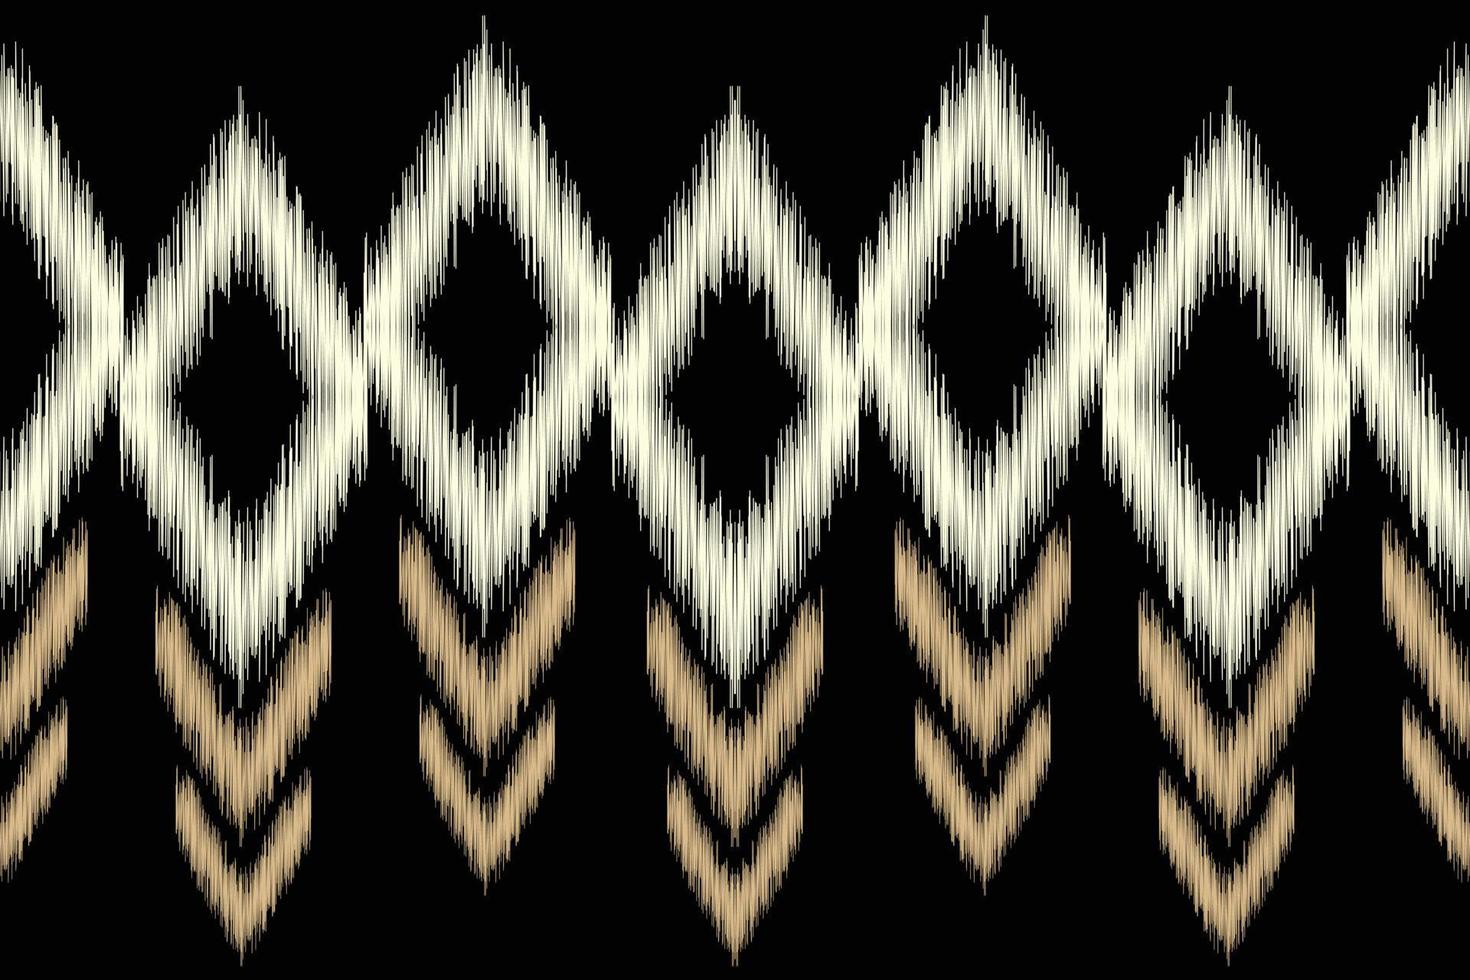 étnico ikat tela modelo geométrico estilo.africano ikat bordado étnico oriental modelo negro antecedentes. resumen,vector,ilustración.para textura,ropa,scraf,decoración,alfombra. vector